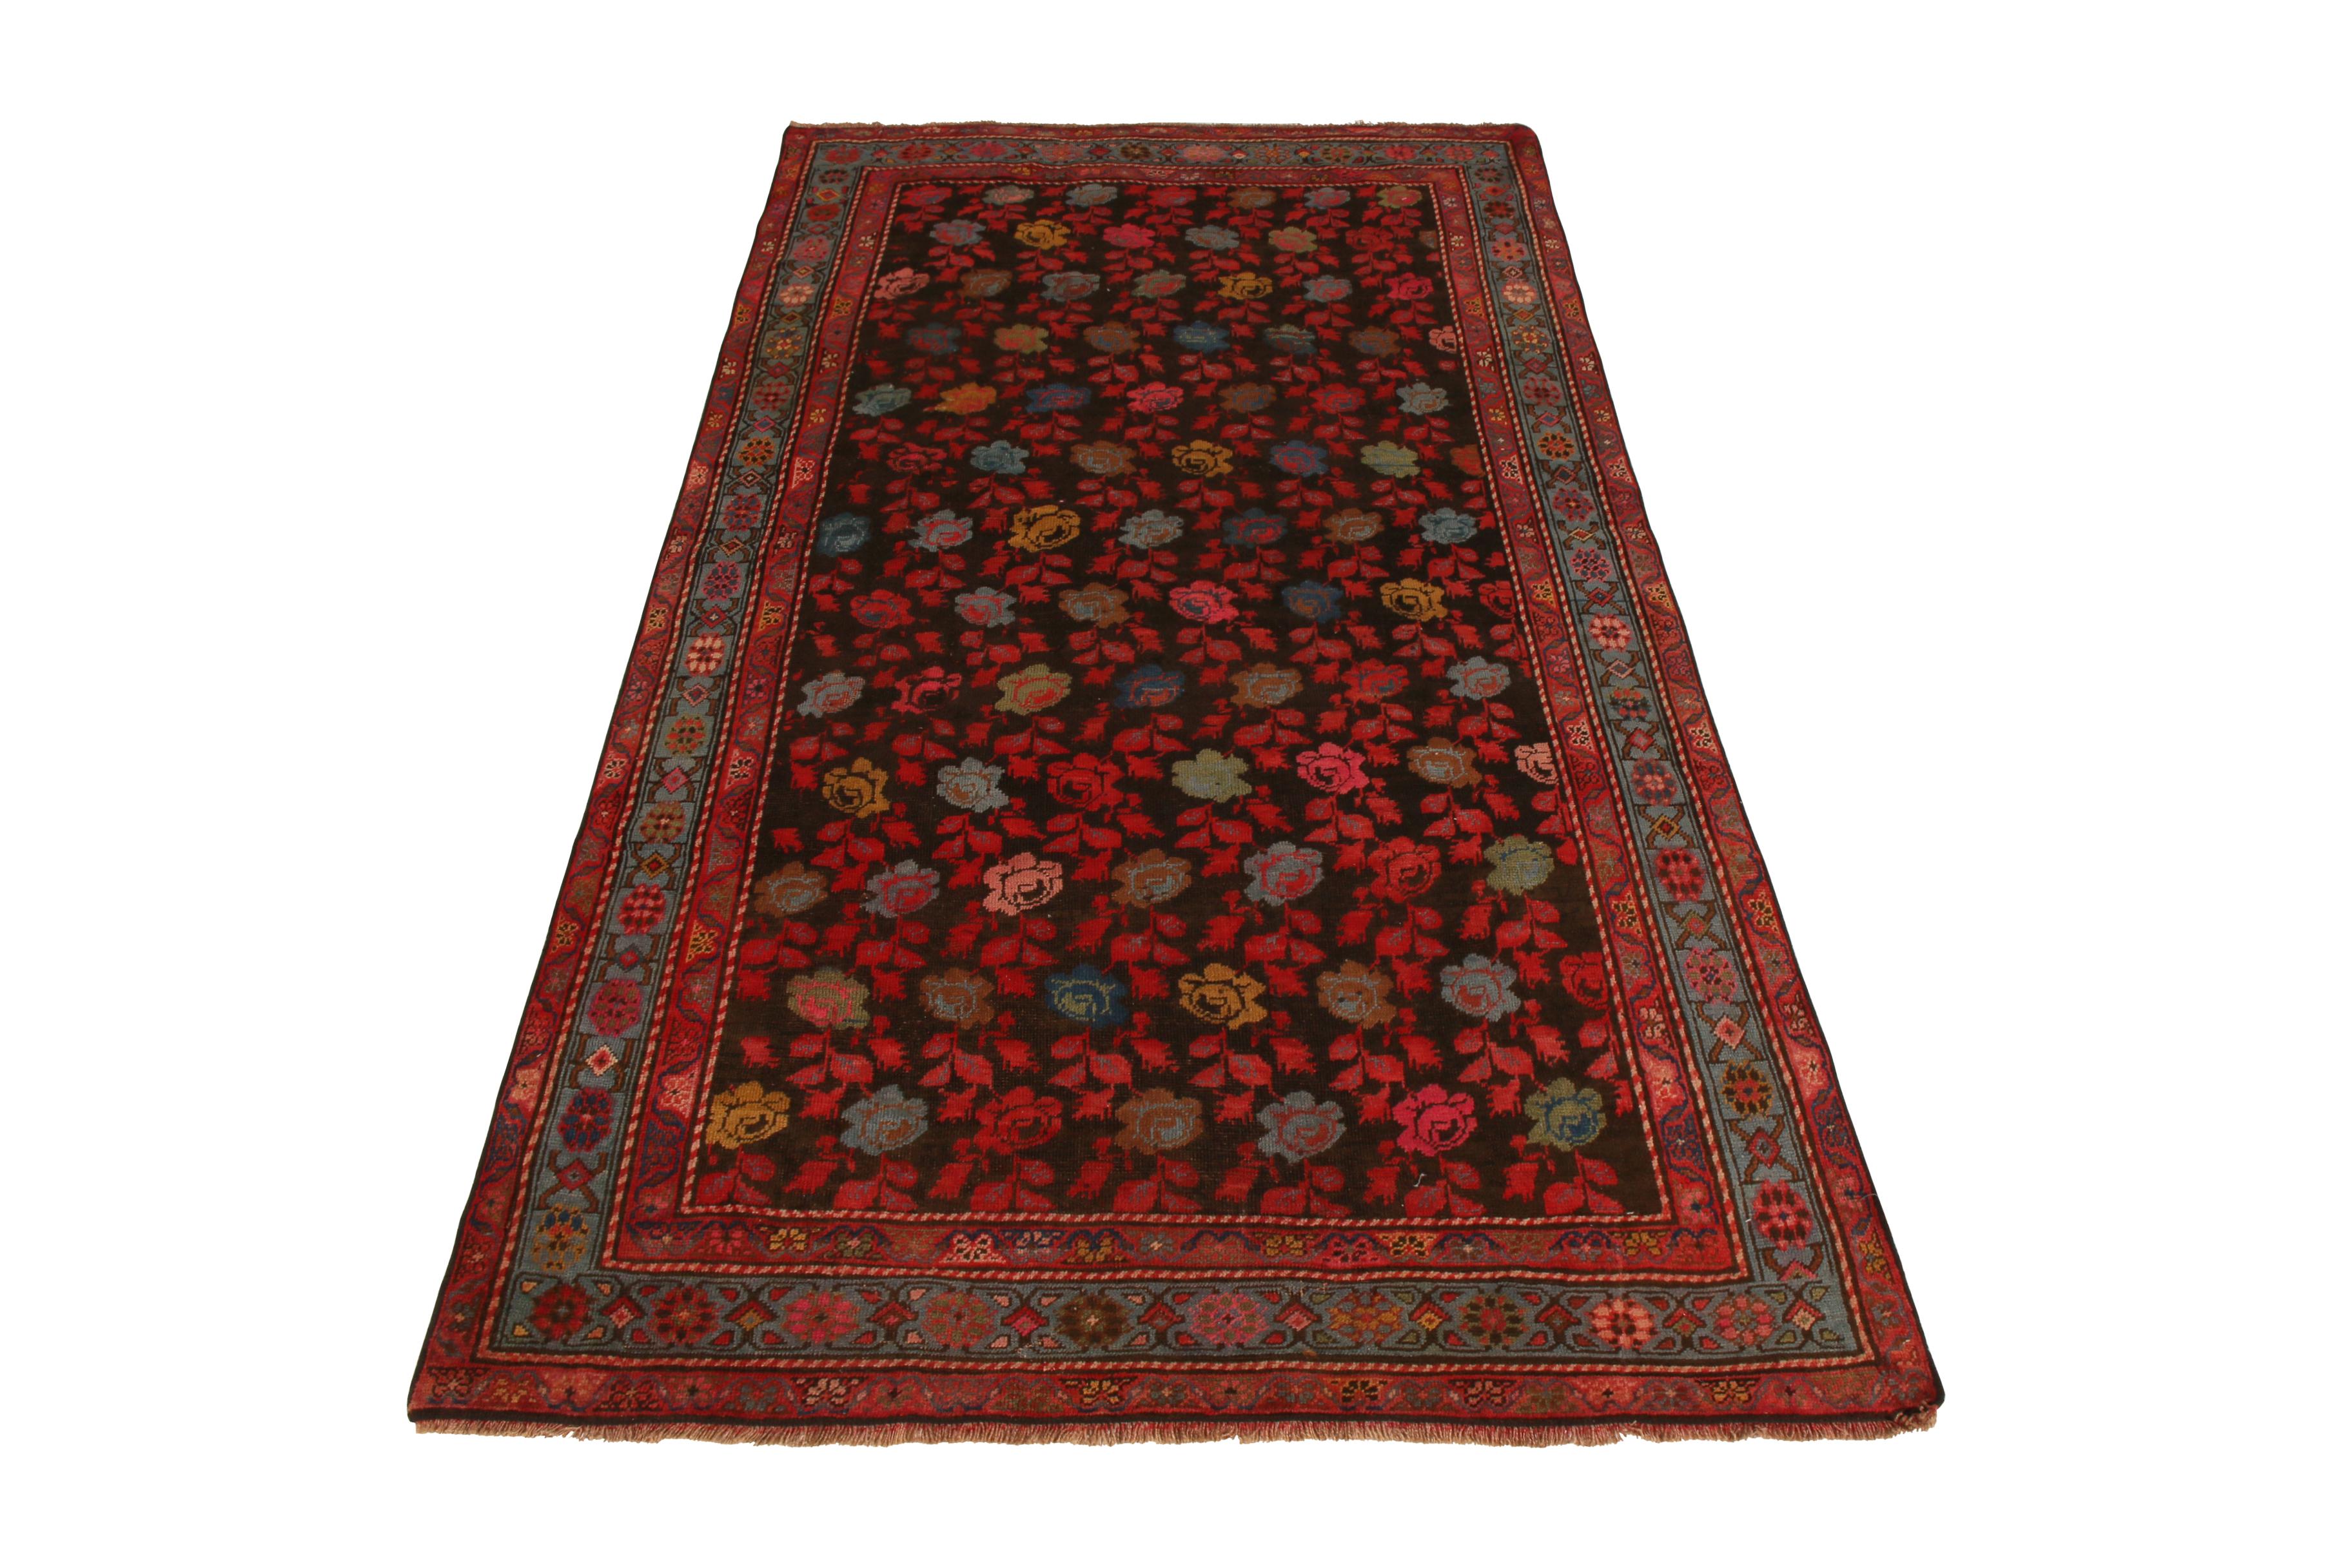 Originaire de Russie vers 1890-1900, cette pièce ancienne évoque un tapis Karabagh avec une approche colorée de fleurs dans des teintes profondes et saturées, disposées géométriquement pour un arrangement propre. Un favori de notre principal Josh